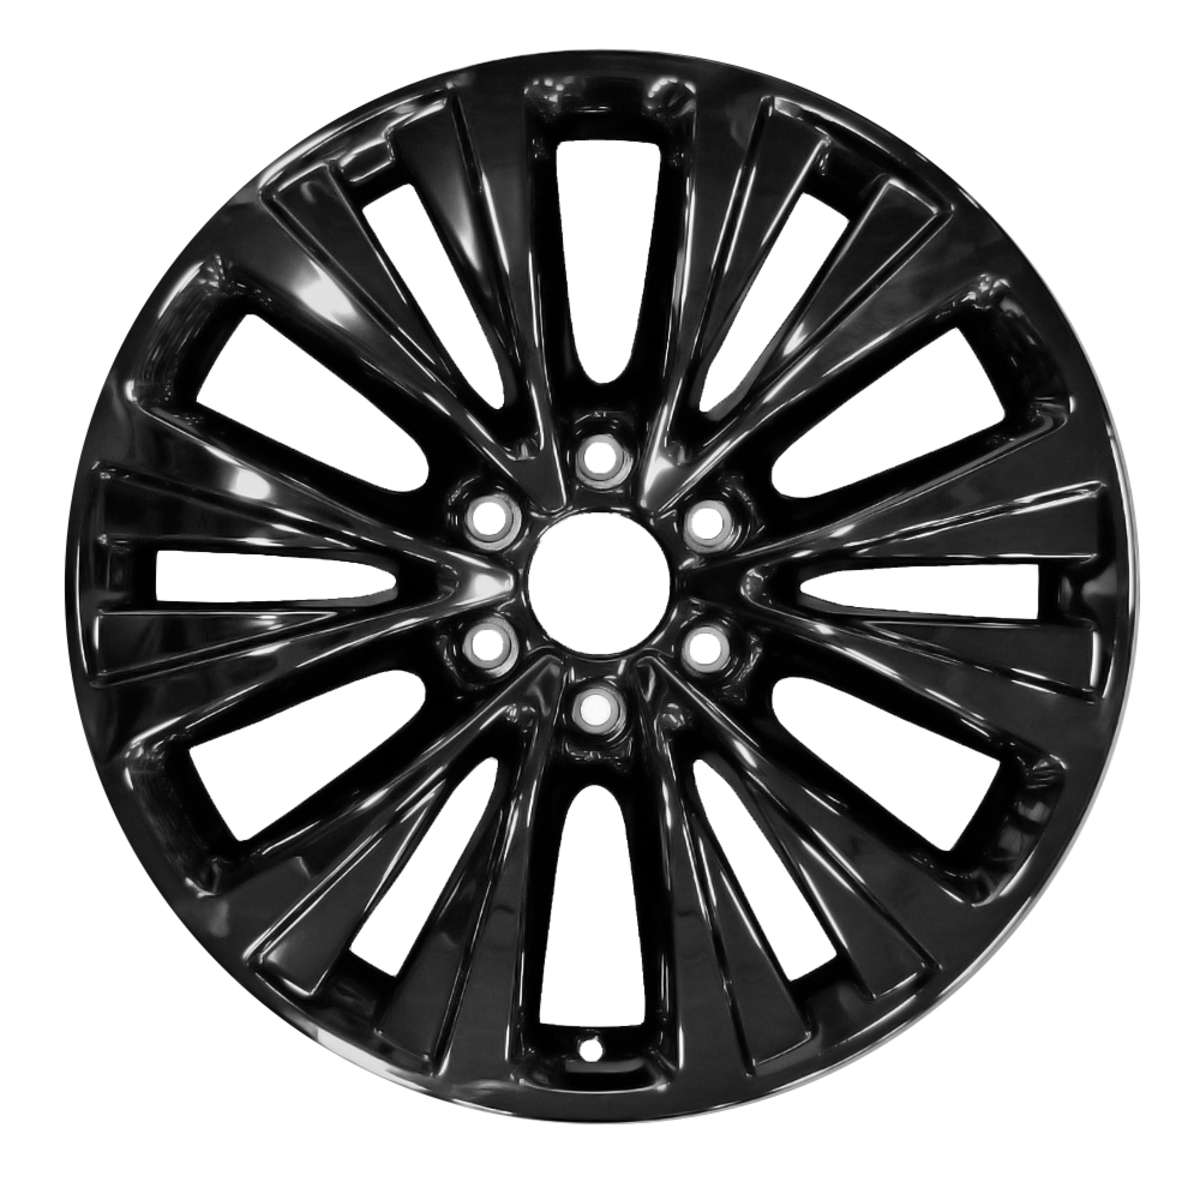 2016 Lincoln Navigator 20" OEM Wheel Rim W10025B